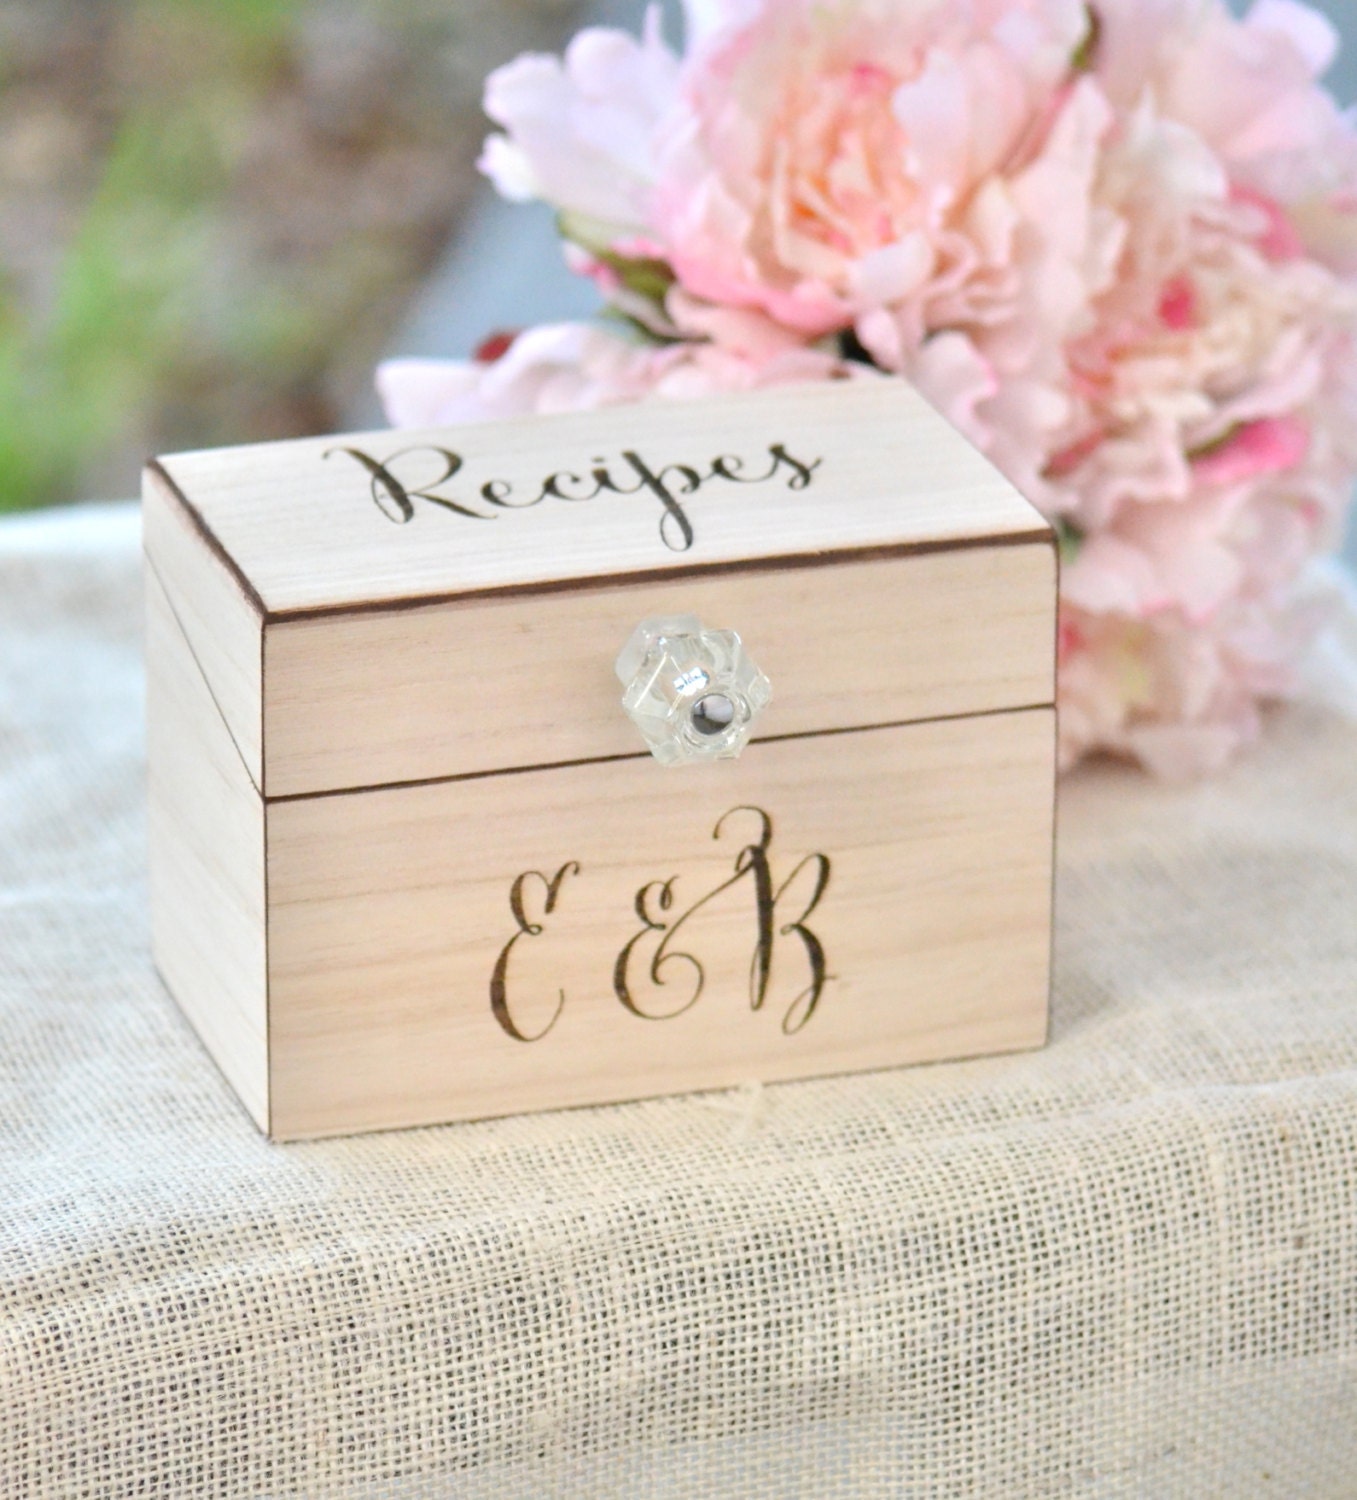 Personalized recipe box wooden recipe box home decorations